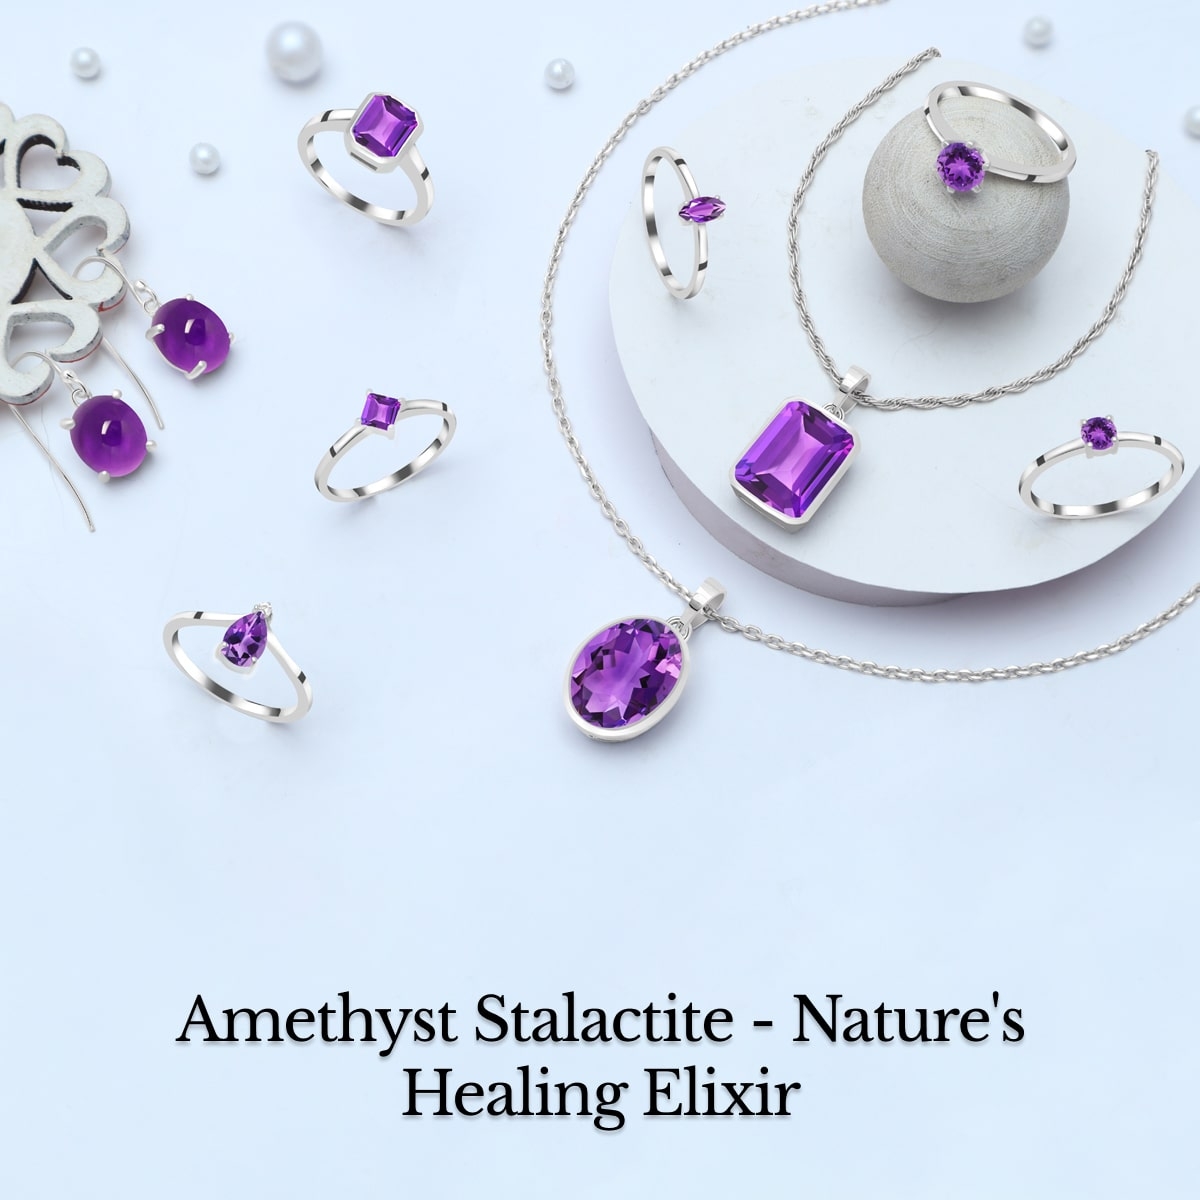 Healing Properties of Amethyst Stalactite